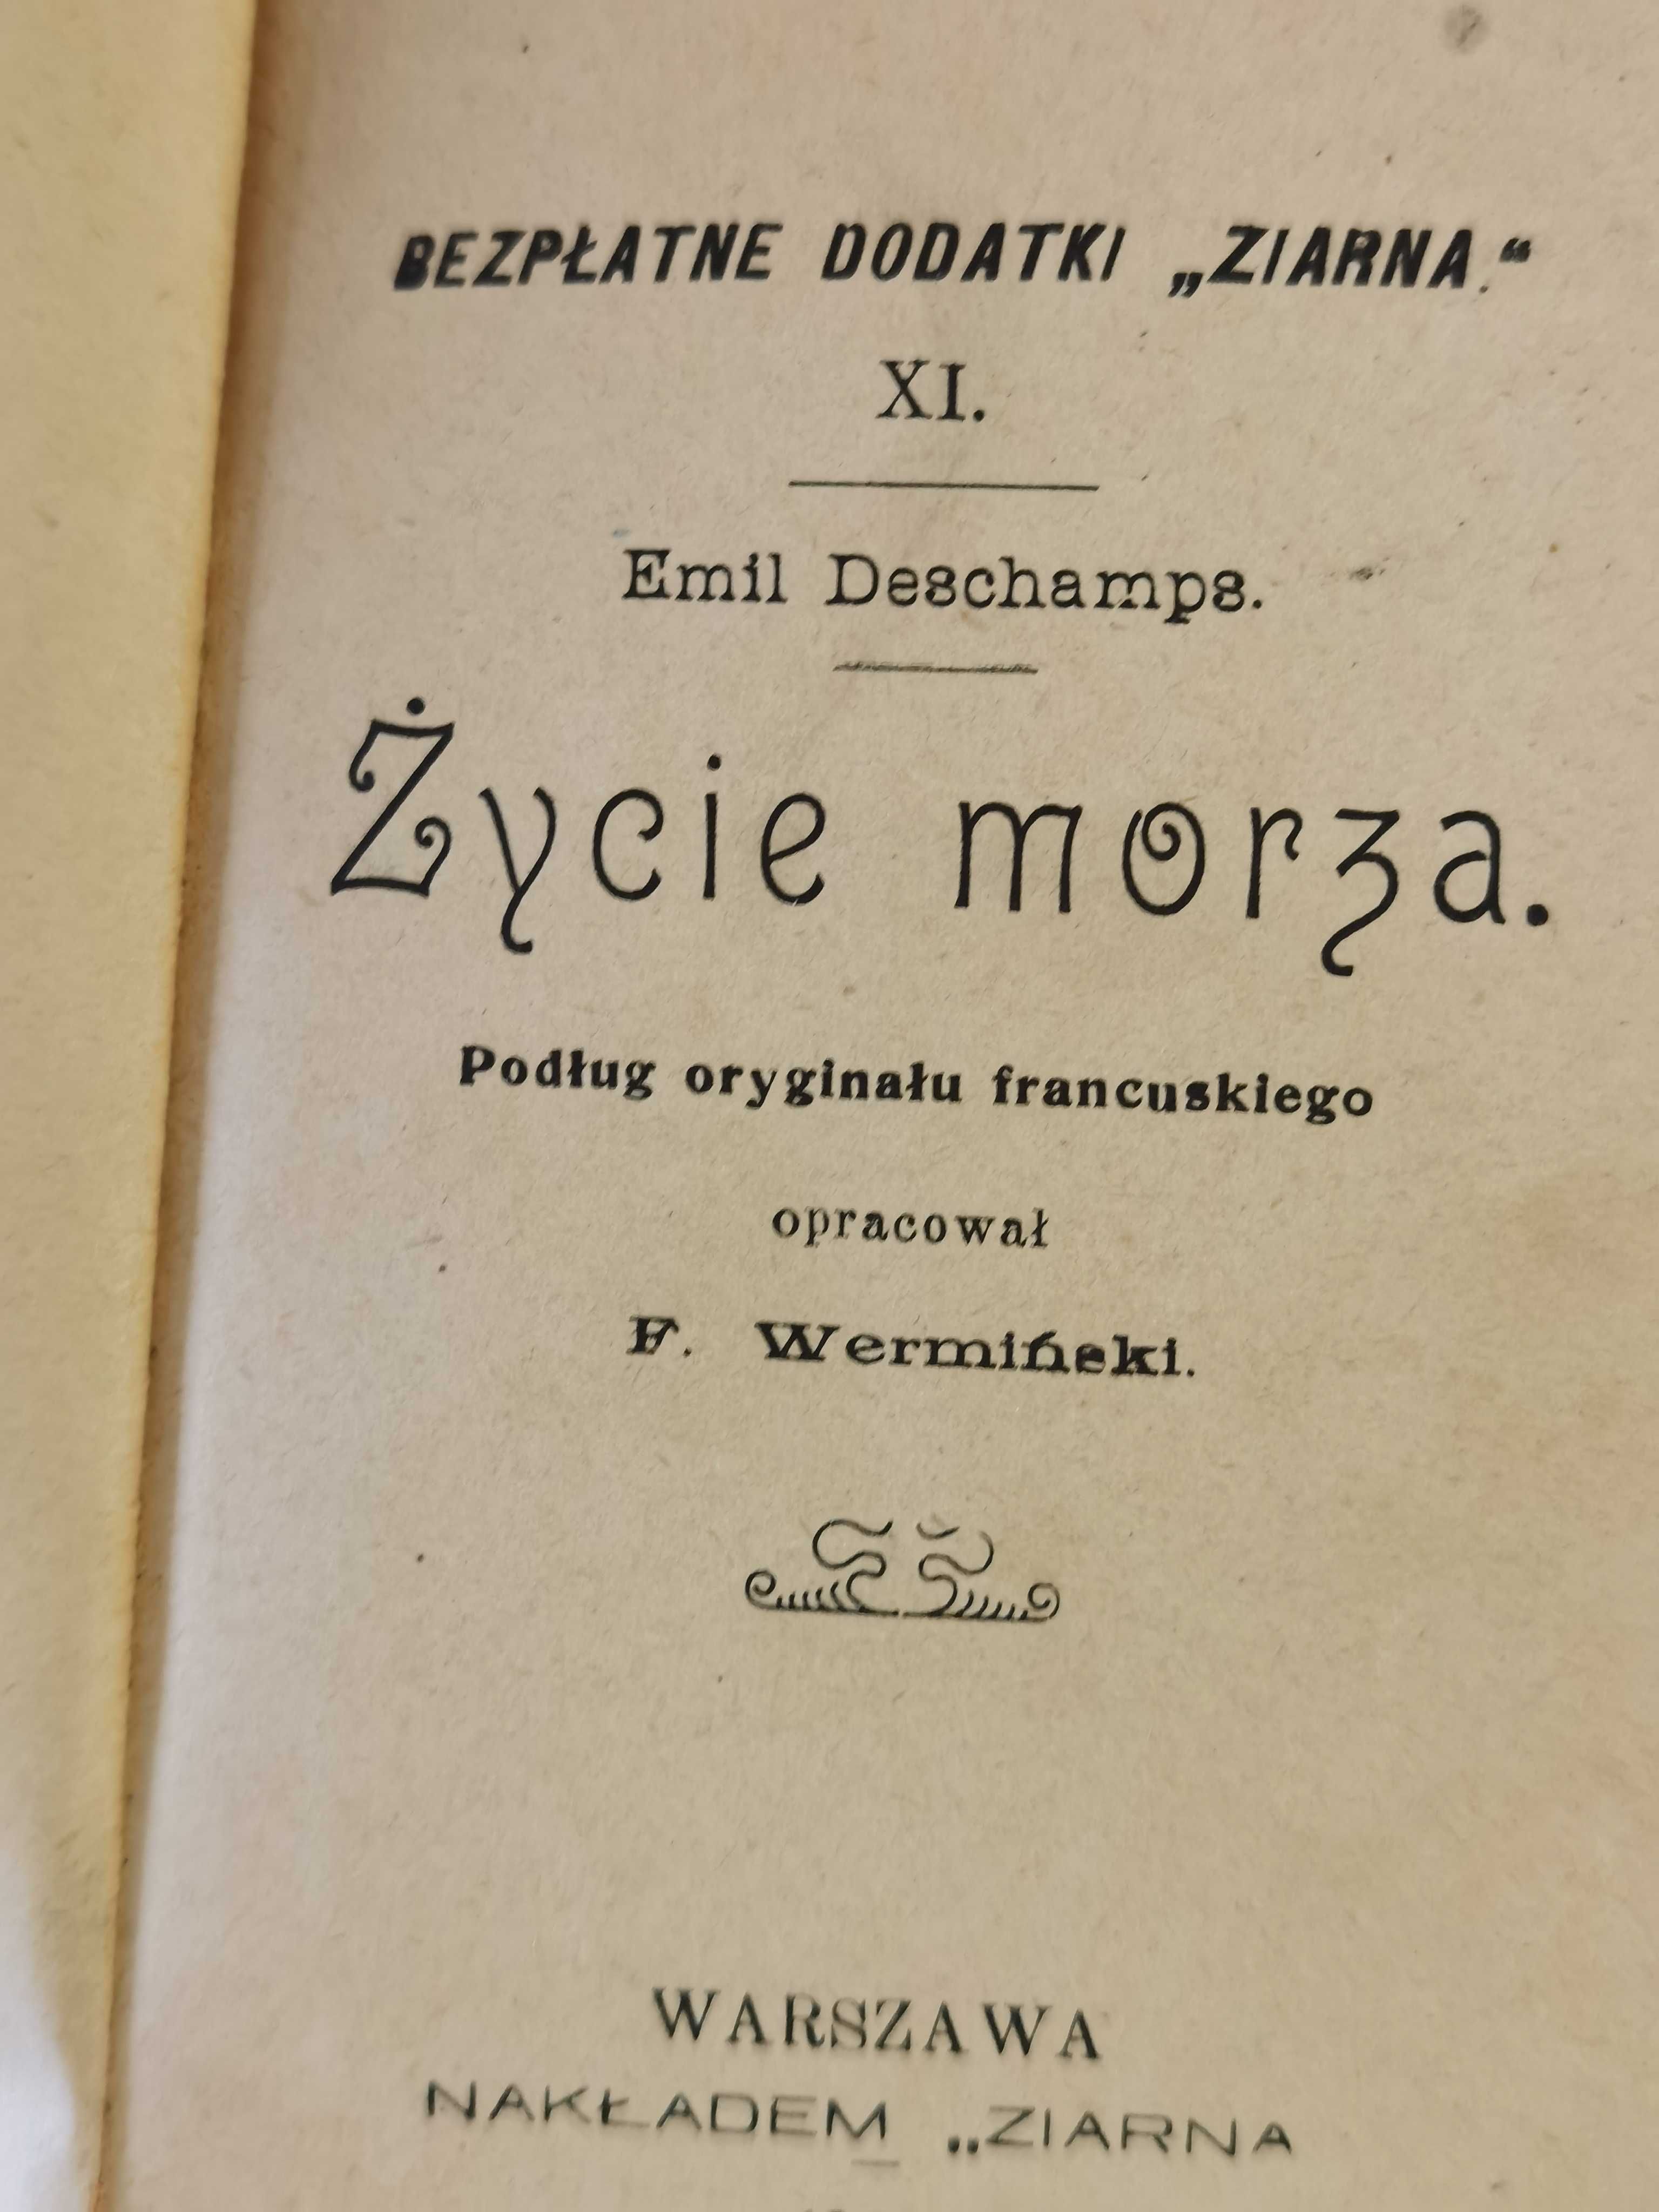 HIT HIT!! Emil Deschamps ŻYCIE MORZA oryginał, rok wydania 1909!!!